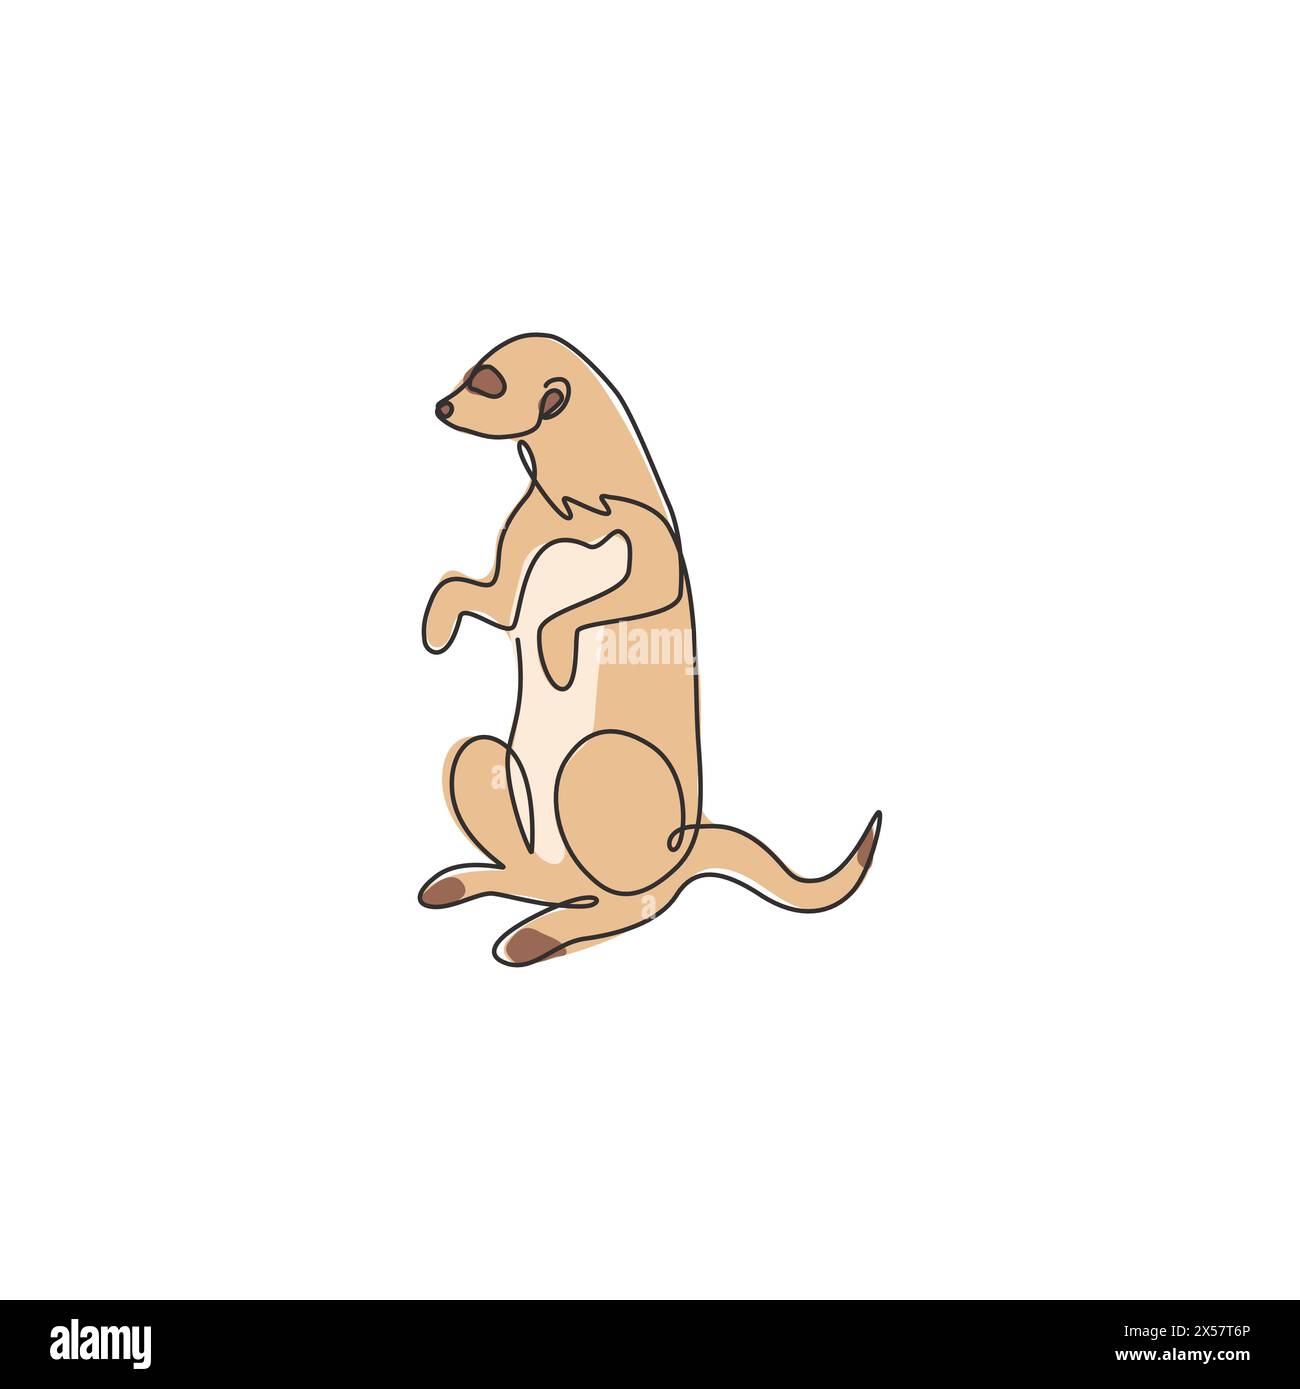 Un disegno su una sola linea di adorabili meerkat per l'identità del logo aziendale. Concetto di mascotte animale Suricata suricatta per l'icona dello zoo nazionale. Continuo moderno Illustrazione Vettoriale